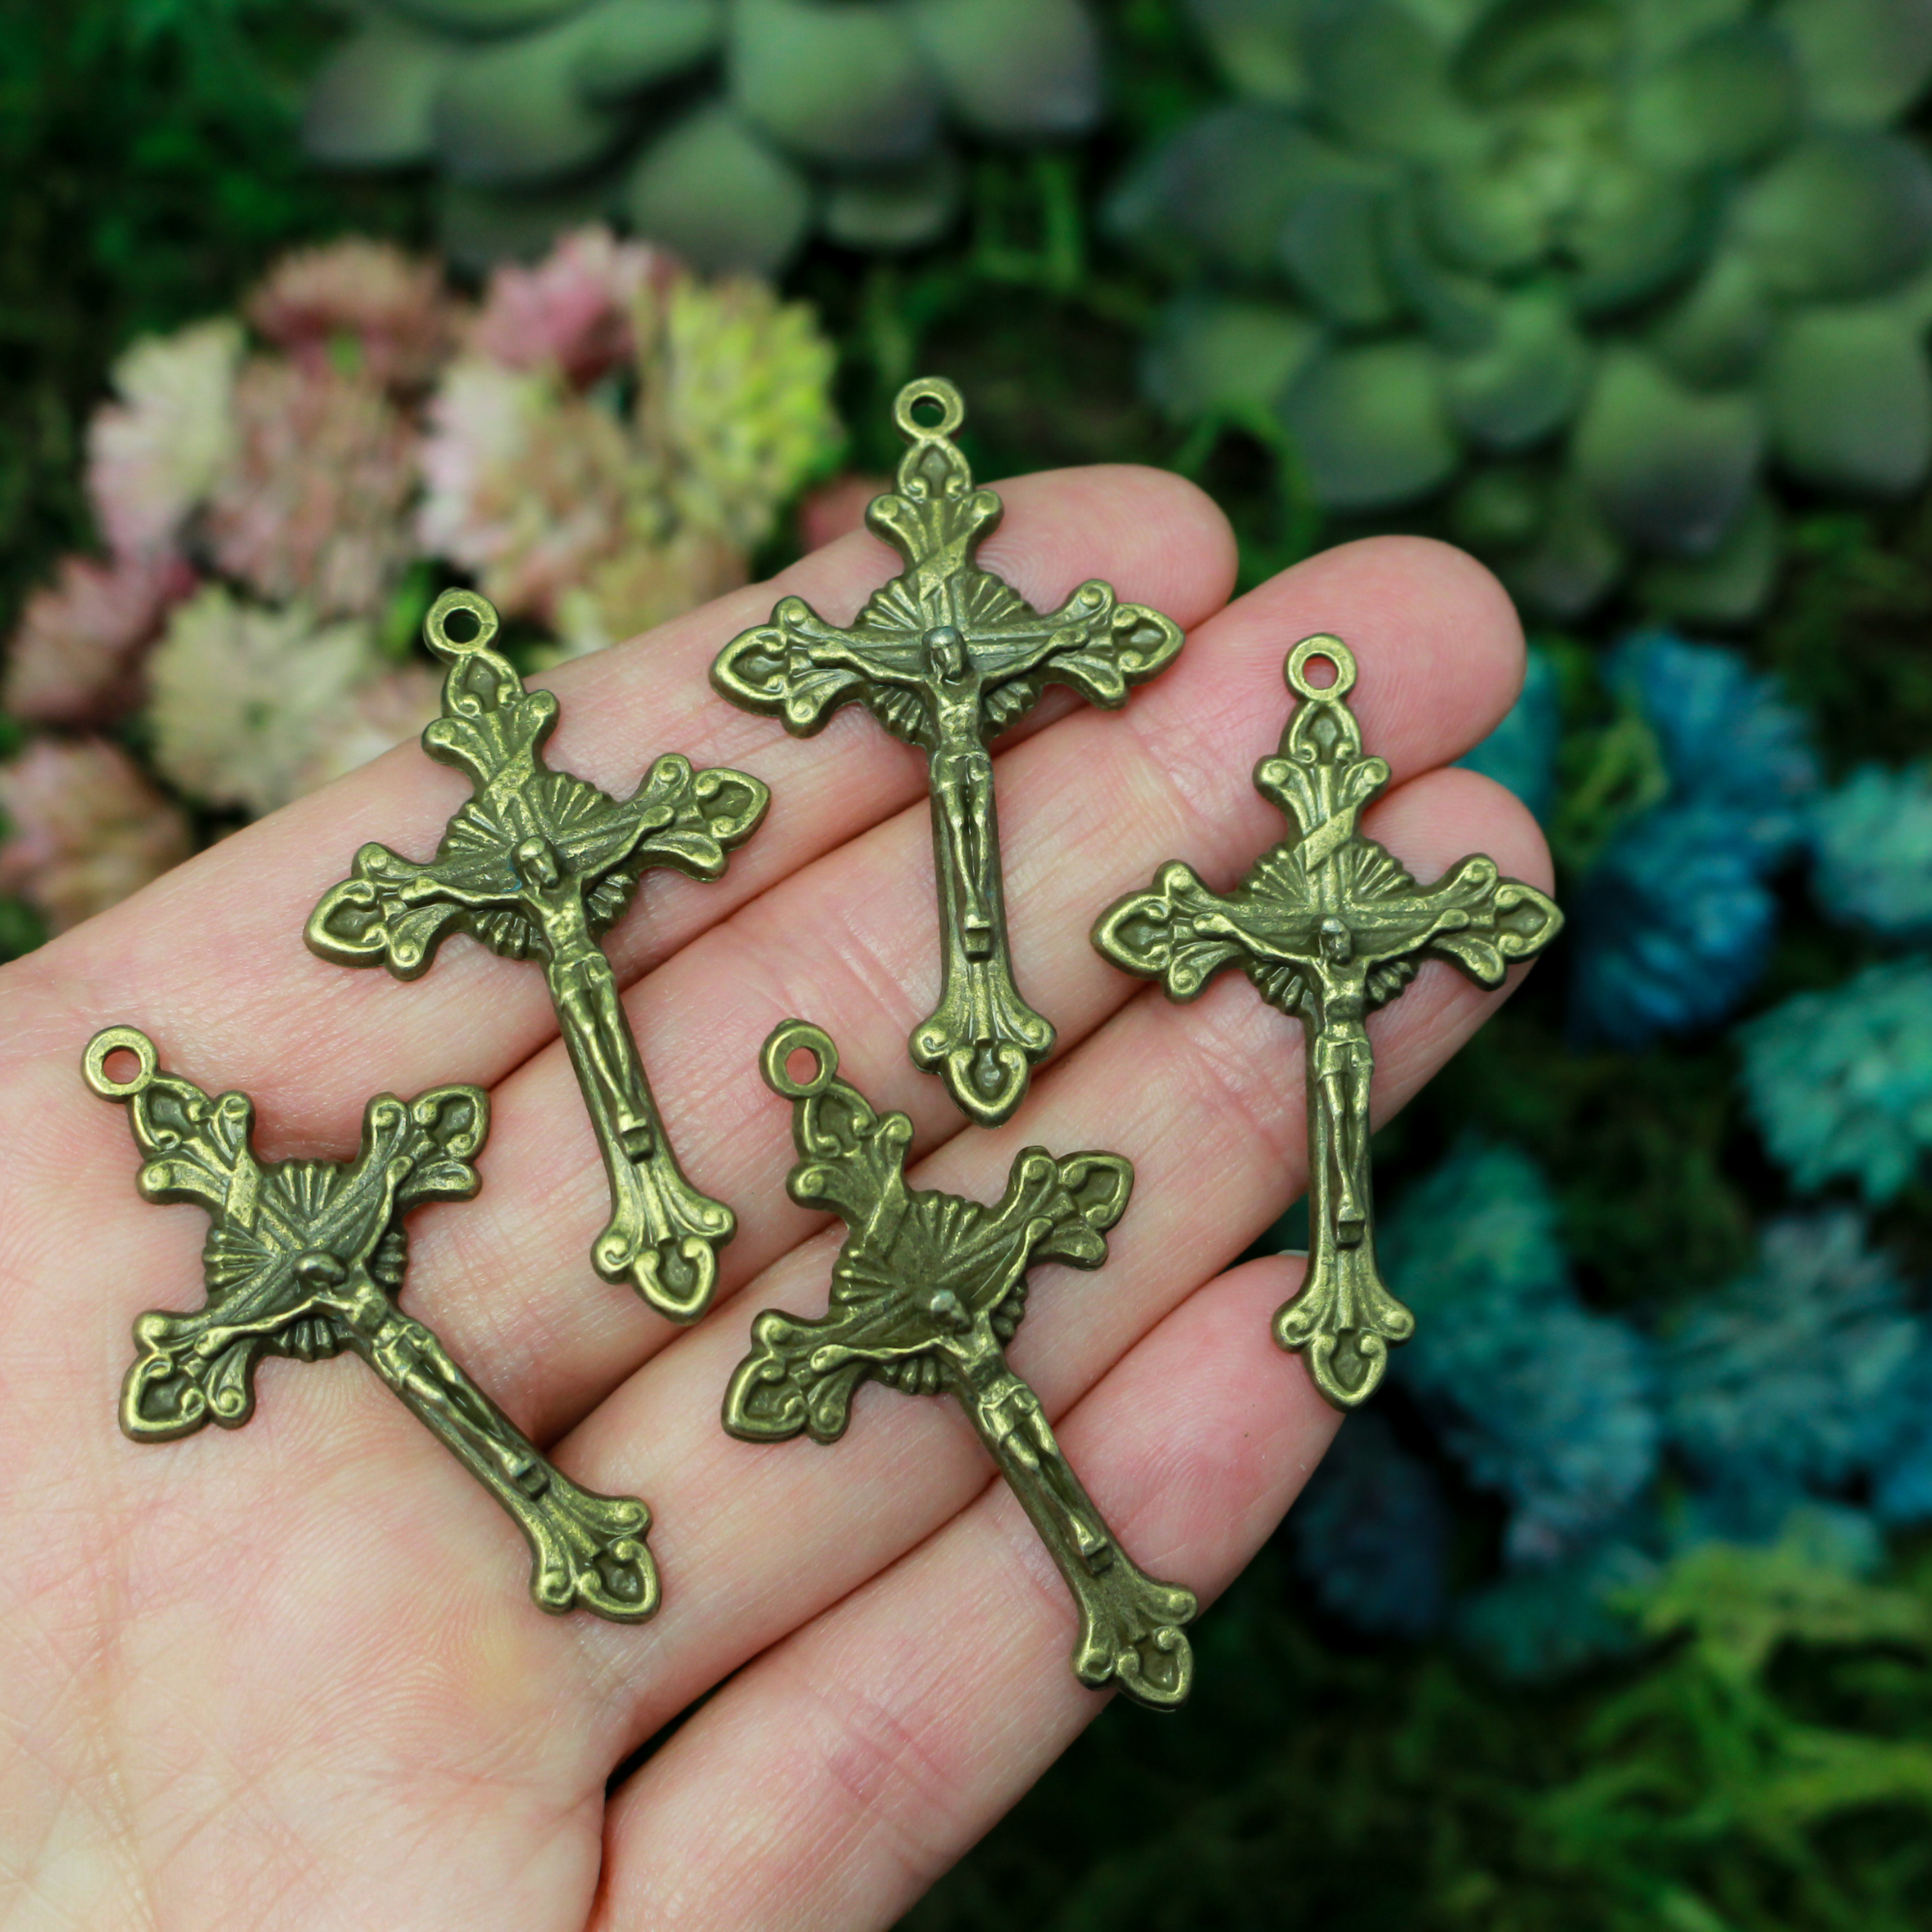 Bronze Starburst Nimbus Crucifix Cross with Fleur de Lis Ends 43mm Long, 5pcs